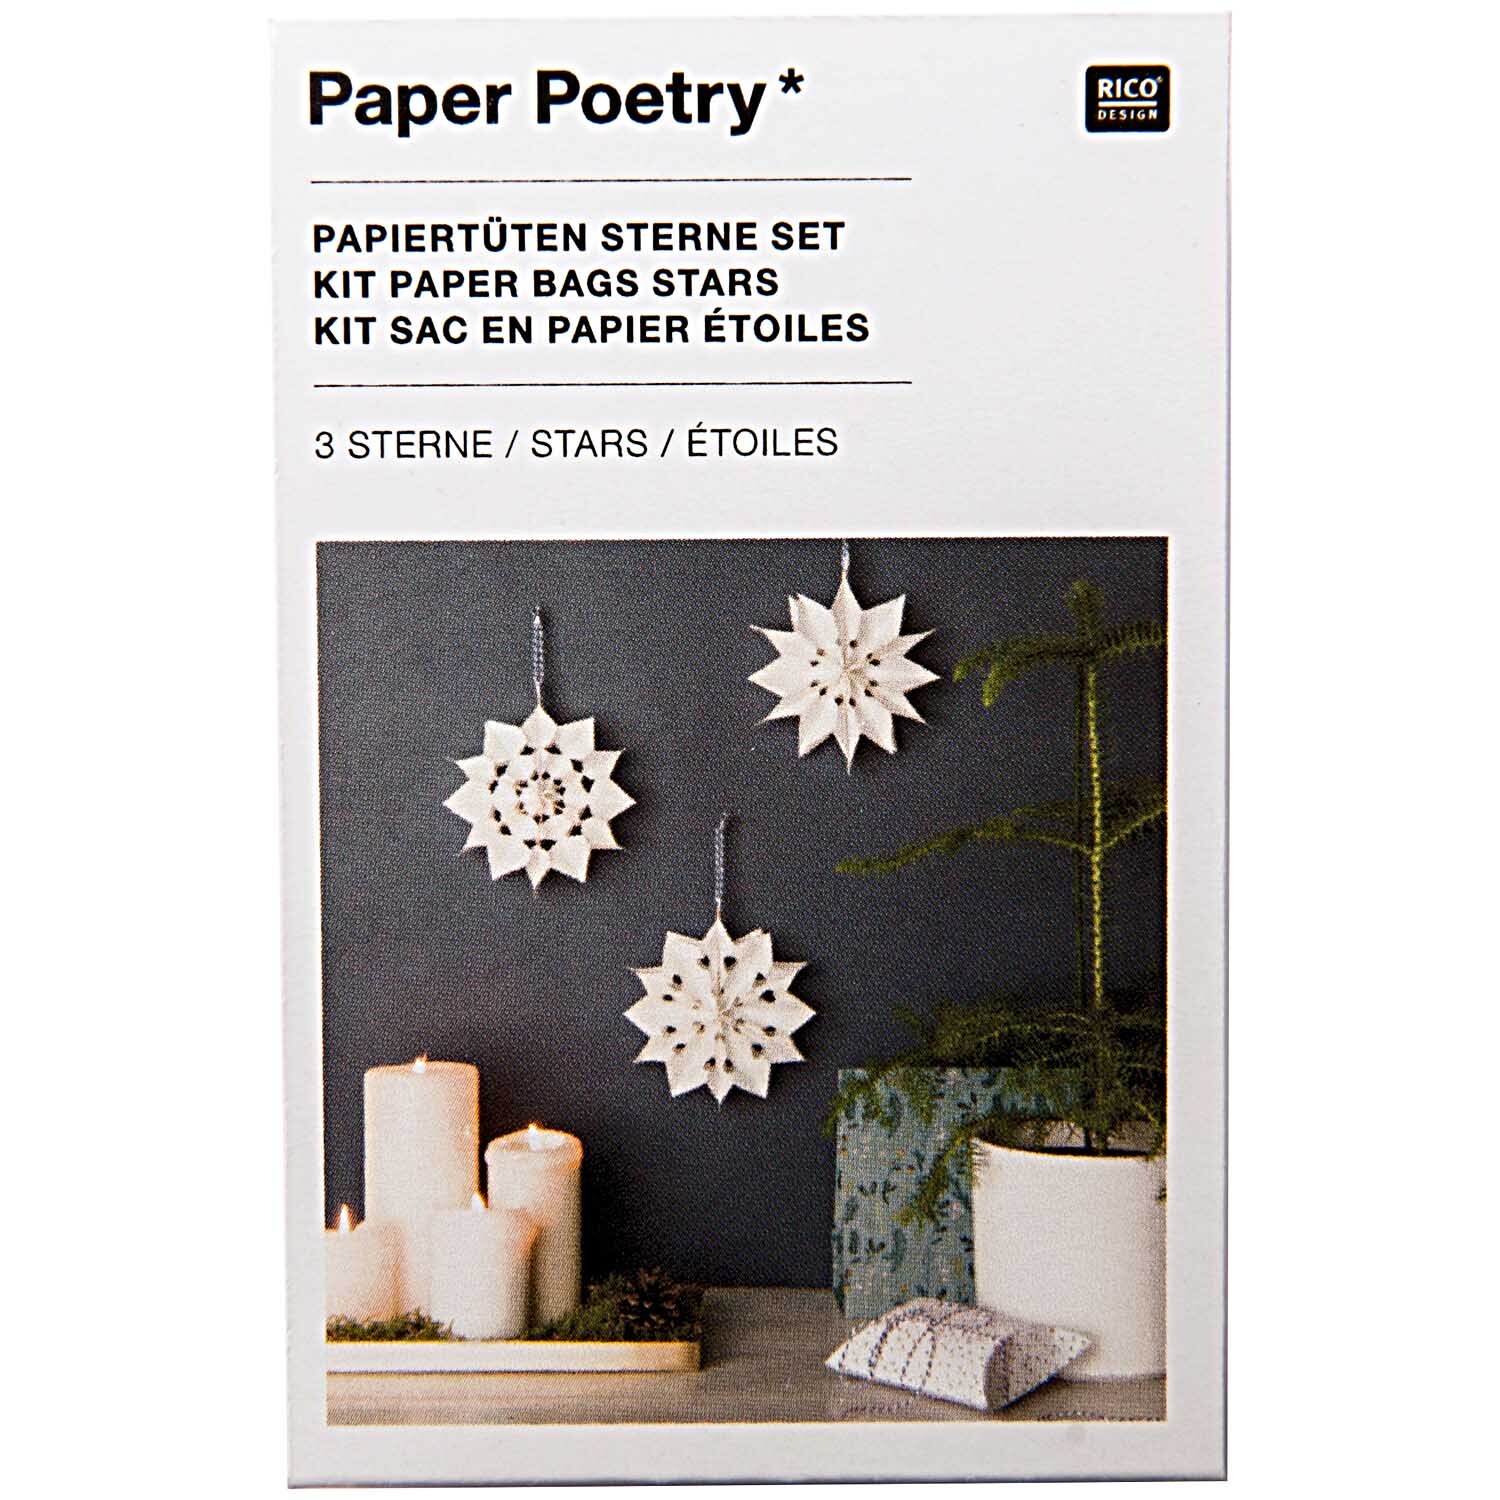 Paper Poetry Bastelset Papiertüten-Sterne klein